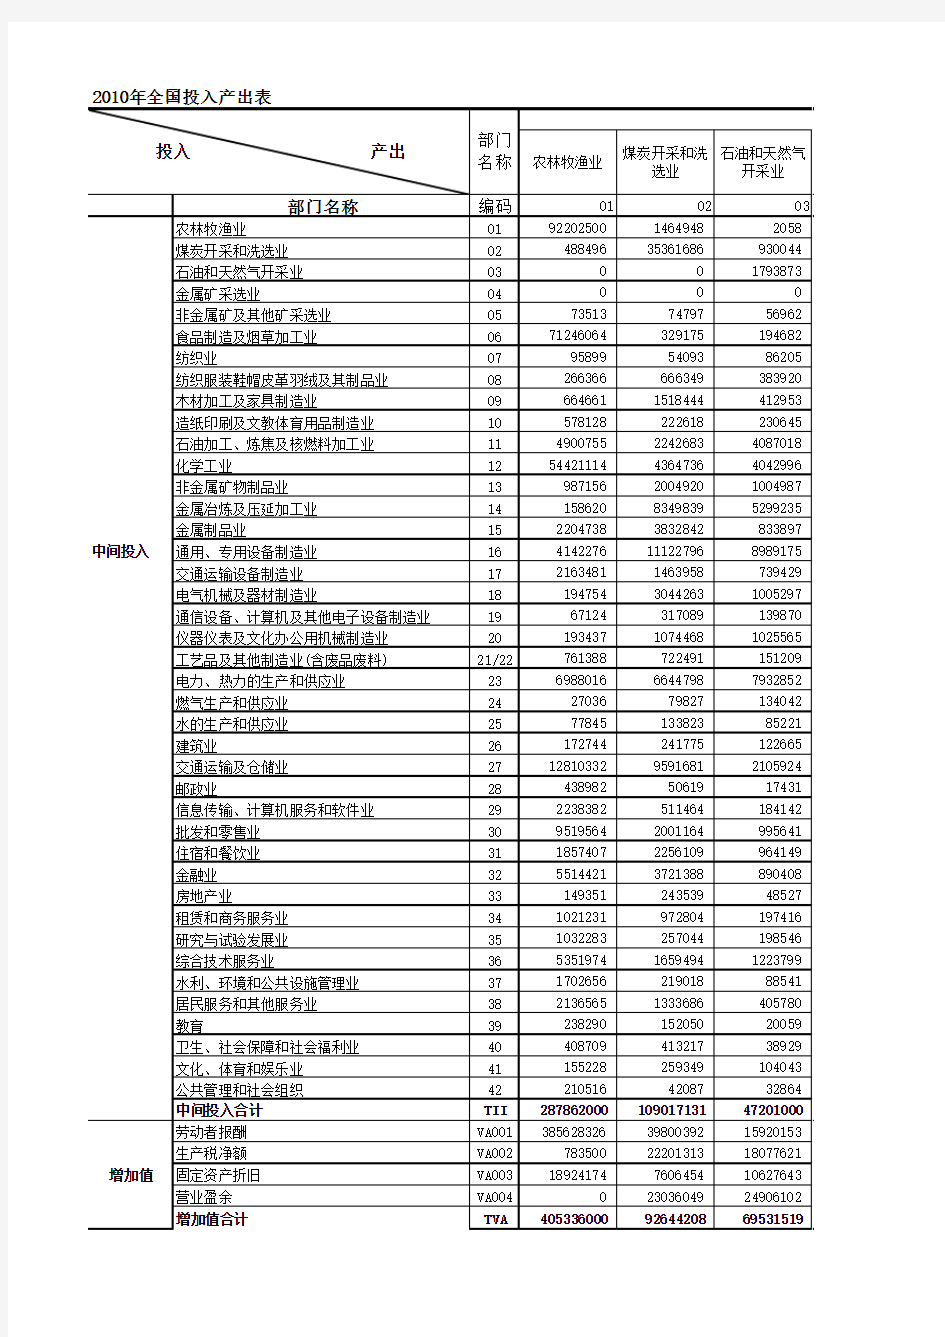 2010中国投入产出表